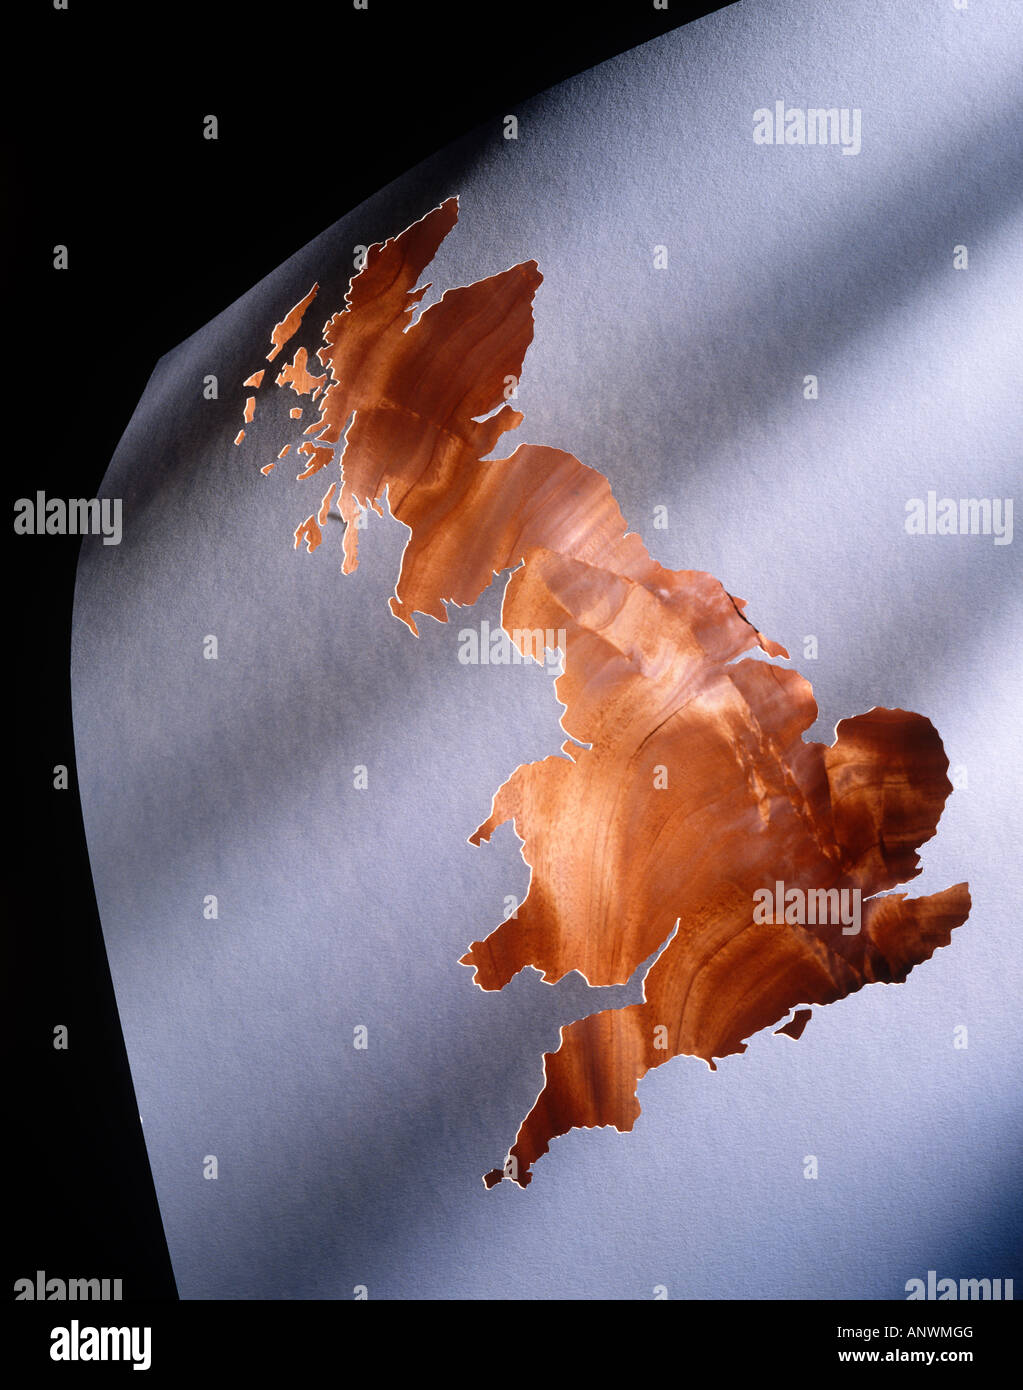 Chapa de madera con recortes de papel, representando el mapa de Inglaterra y Escocia Foto de stock